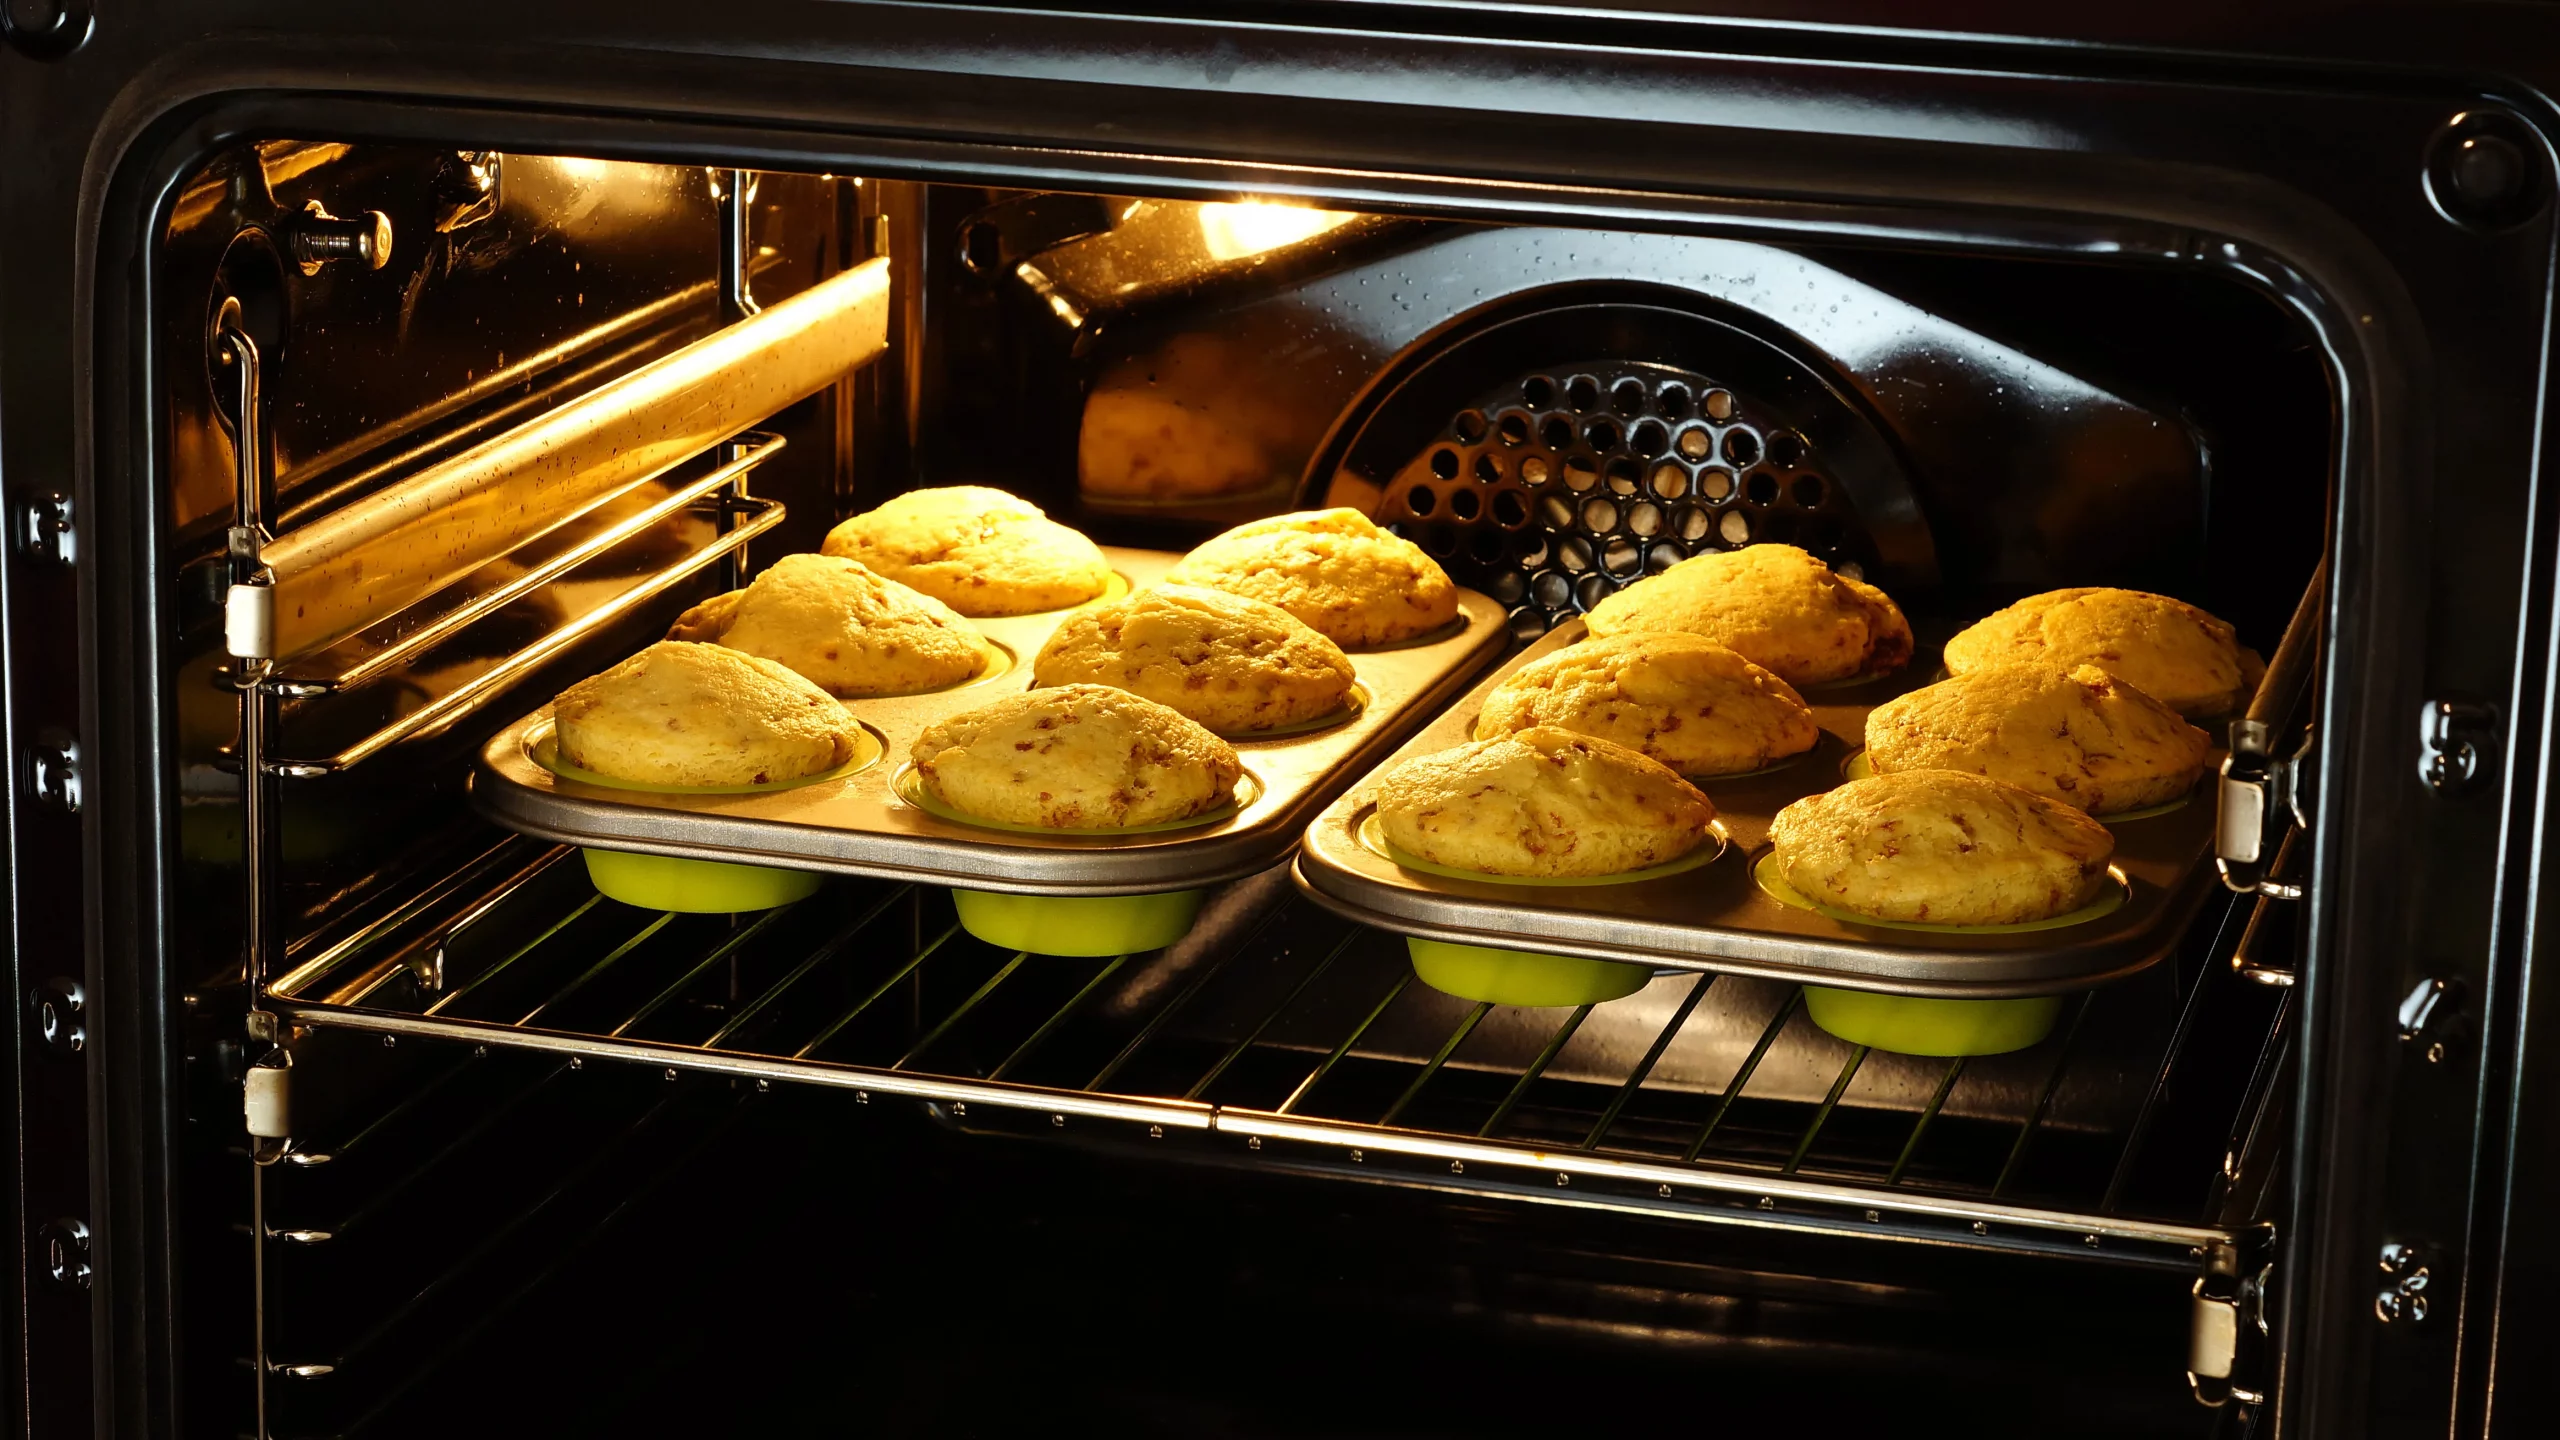 Não quer desperdiçar o calor residual seu forno? O que você pode cozinhar ou assar no forno desligado?